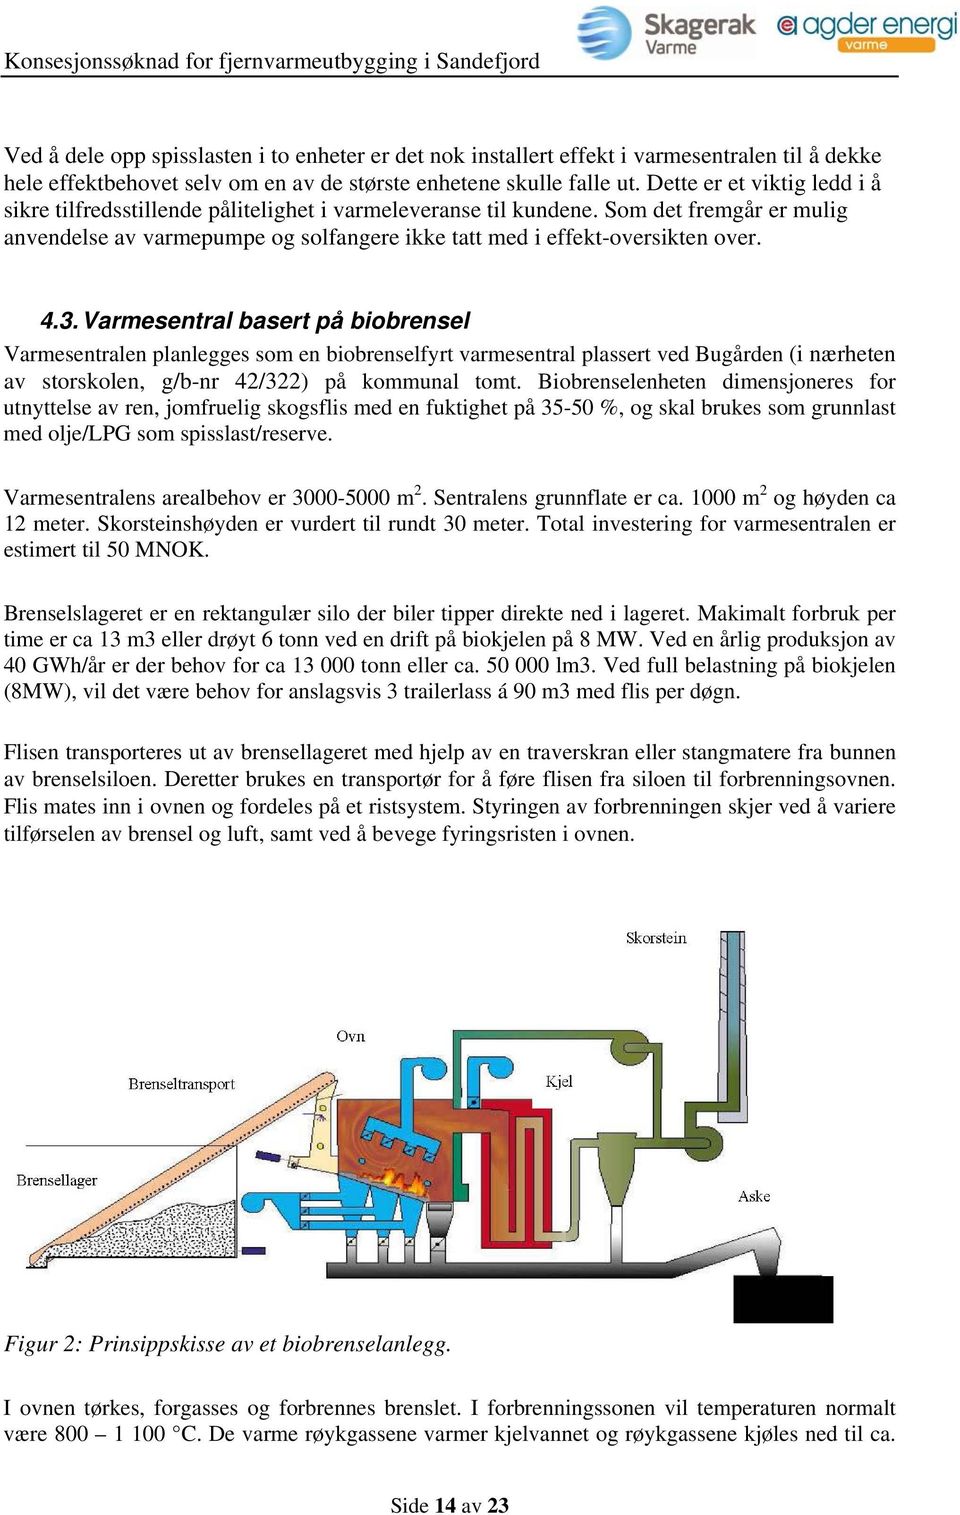 4.3. Varmesentral basert på biobrensel Varmesentralen planlegges som en biobrenselfyrt varmesentral plassert ved Bugården (i nærheten av storskolen, g/b-nr 42/322) på kommunal tomt.